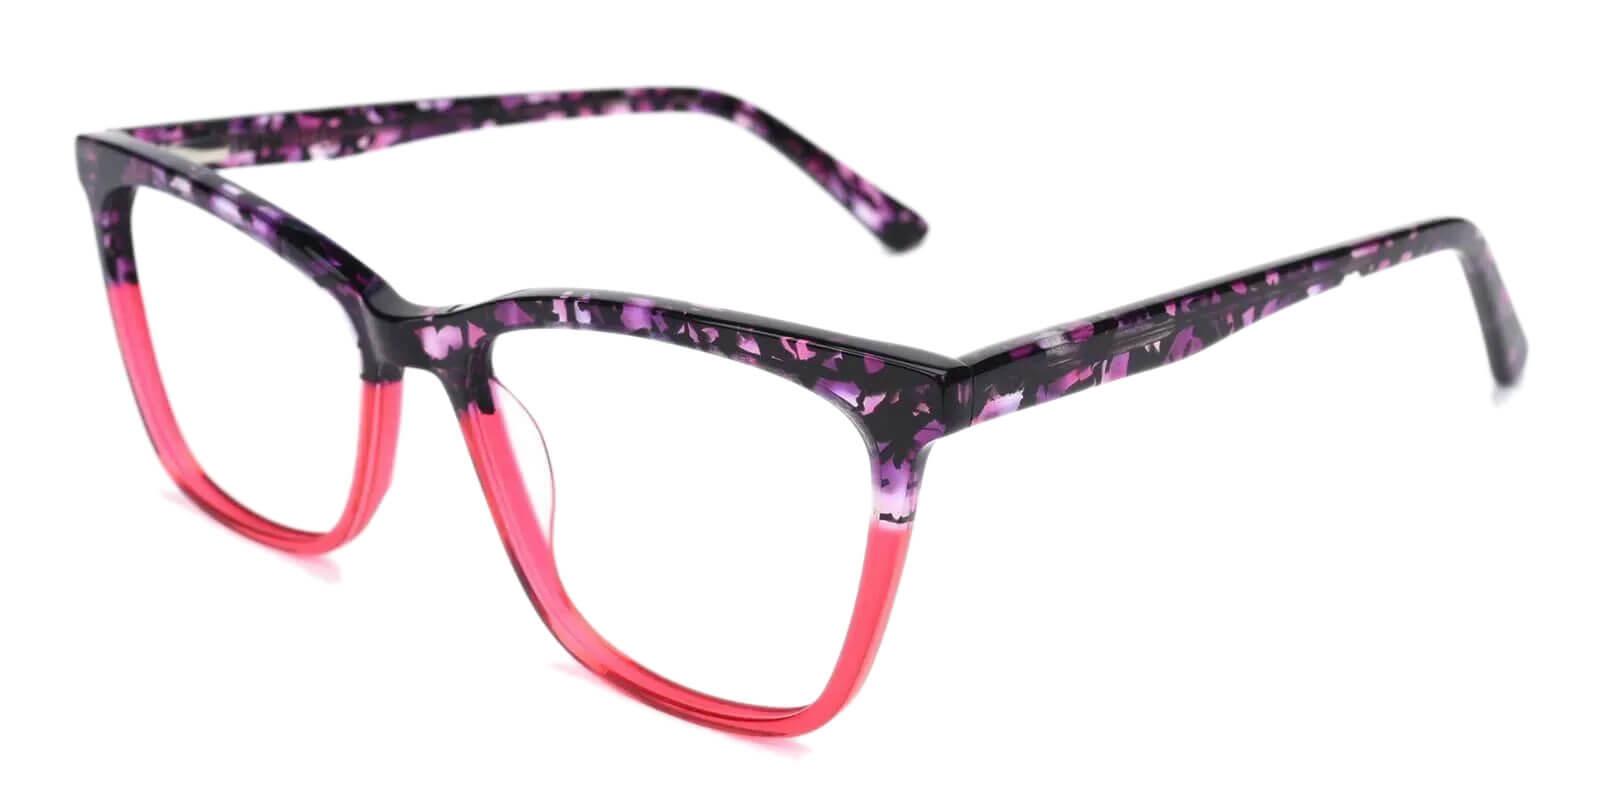 Masser Purple Acetate Eyeglasses , UniversalBridgeFit Frames from ABBE Glasses